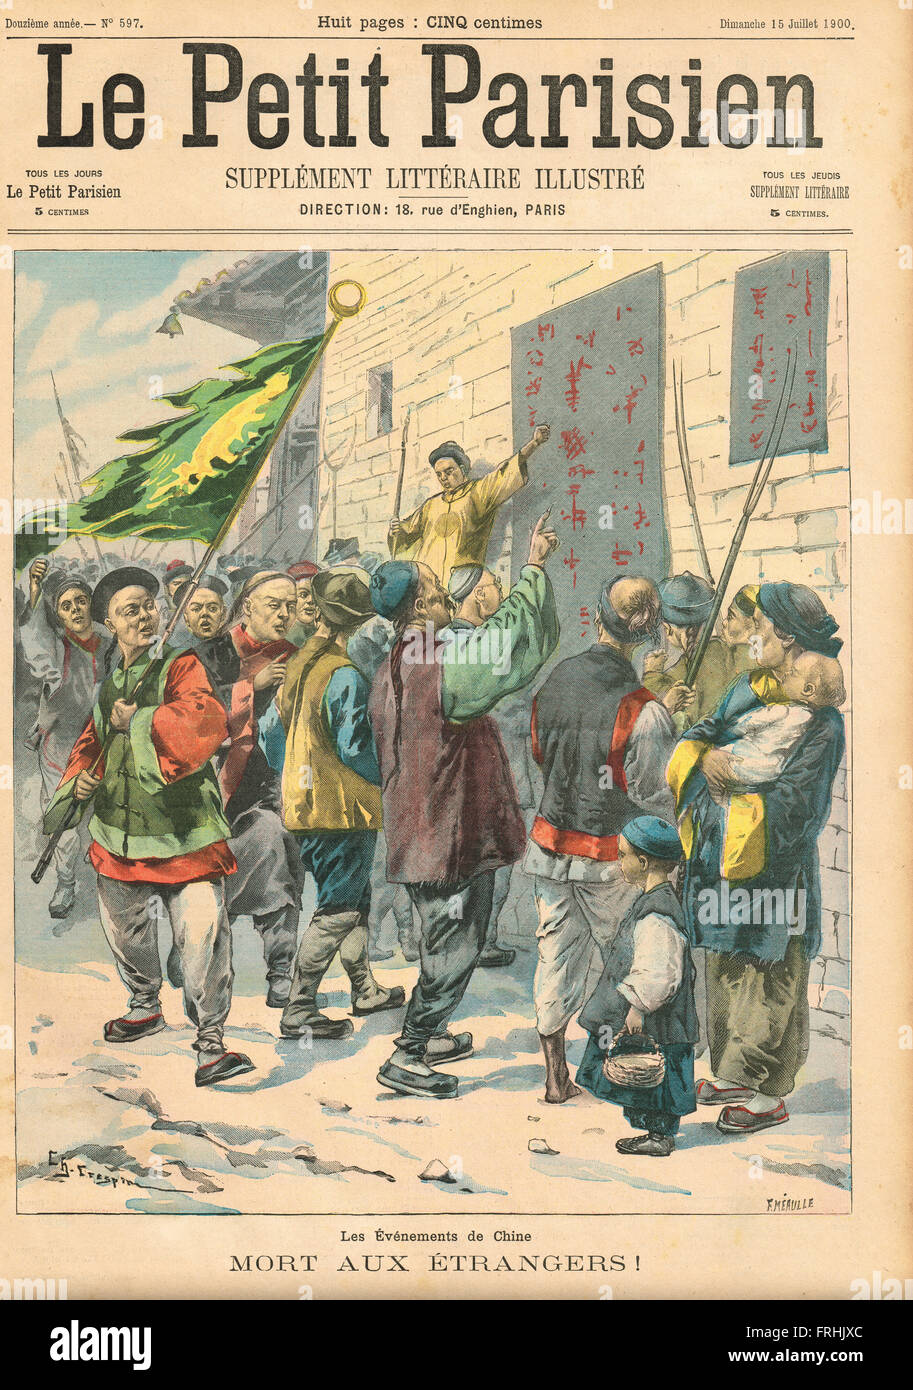 ¡Muerte a los extranjeros! Boxeador Rebelión China 1900. Ilustración de periódico ilustrado francés Le Petit Parisien Foto de stock